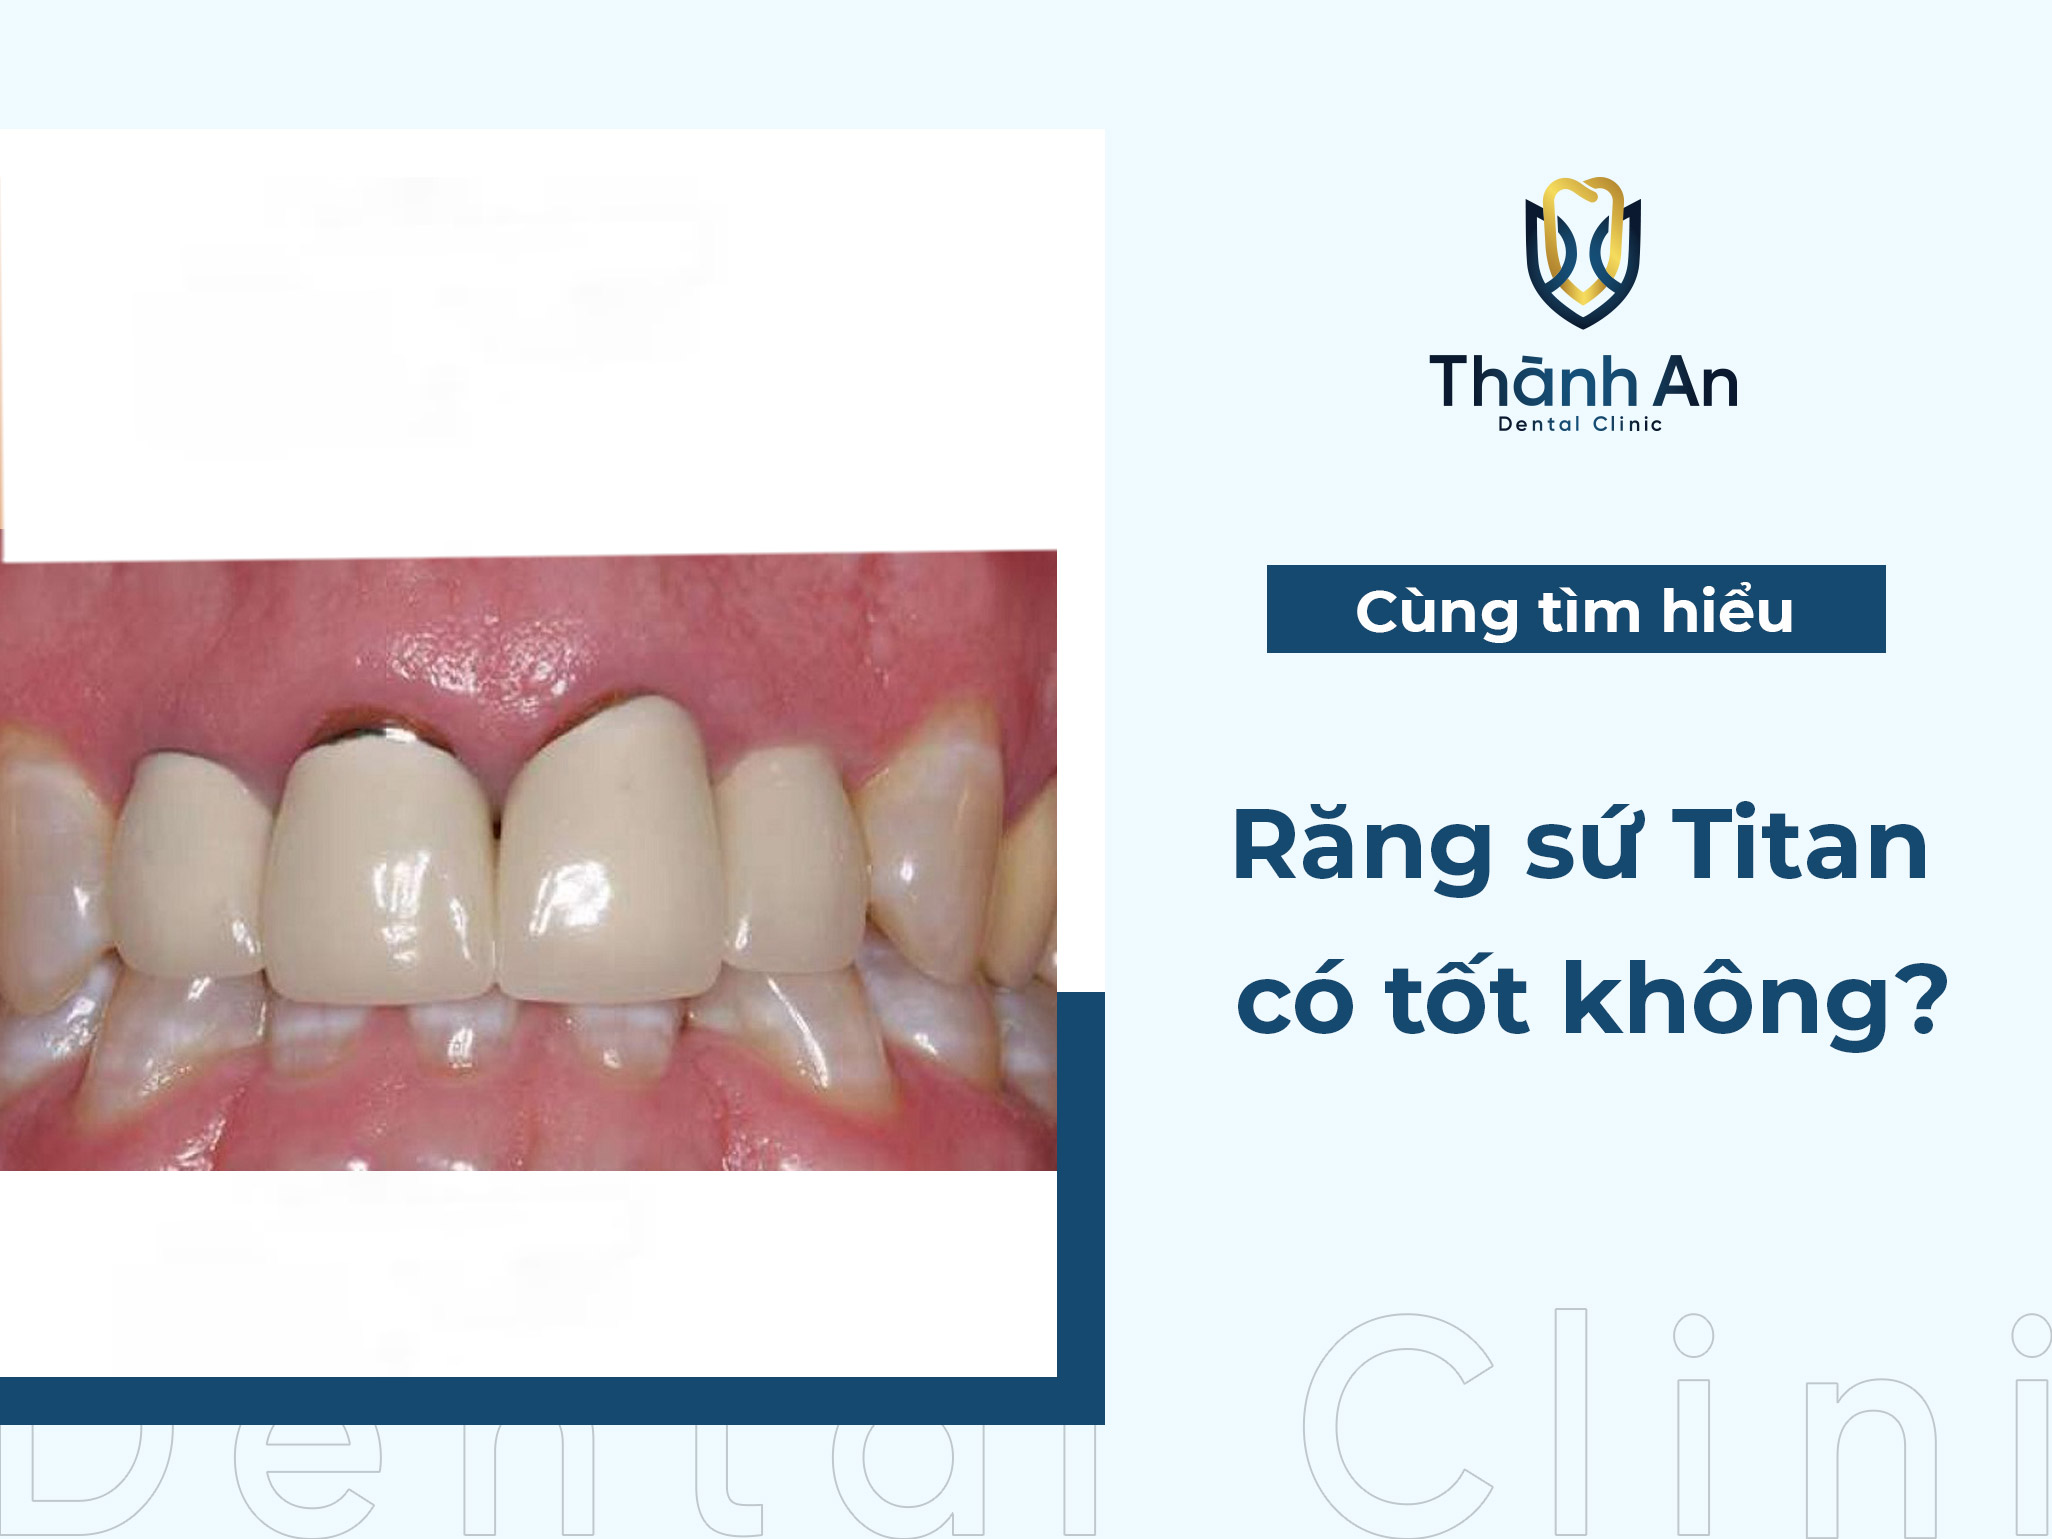 Răng sứ Titan có tốt không? Nên bọc răng loại nào?